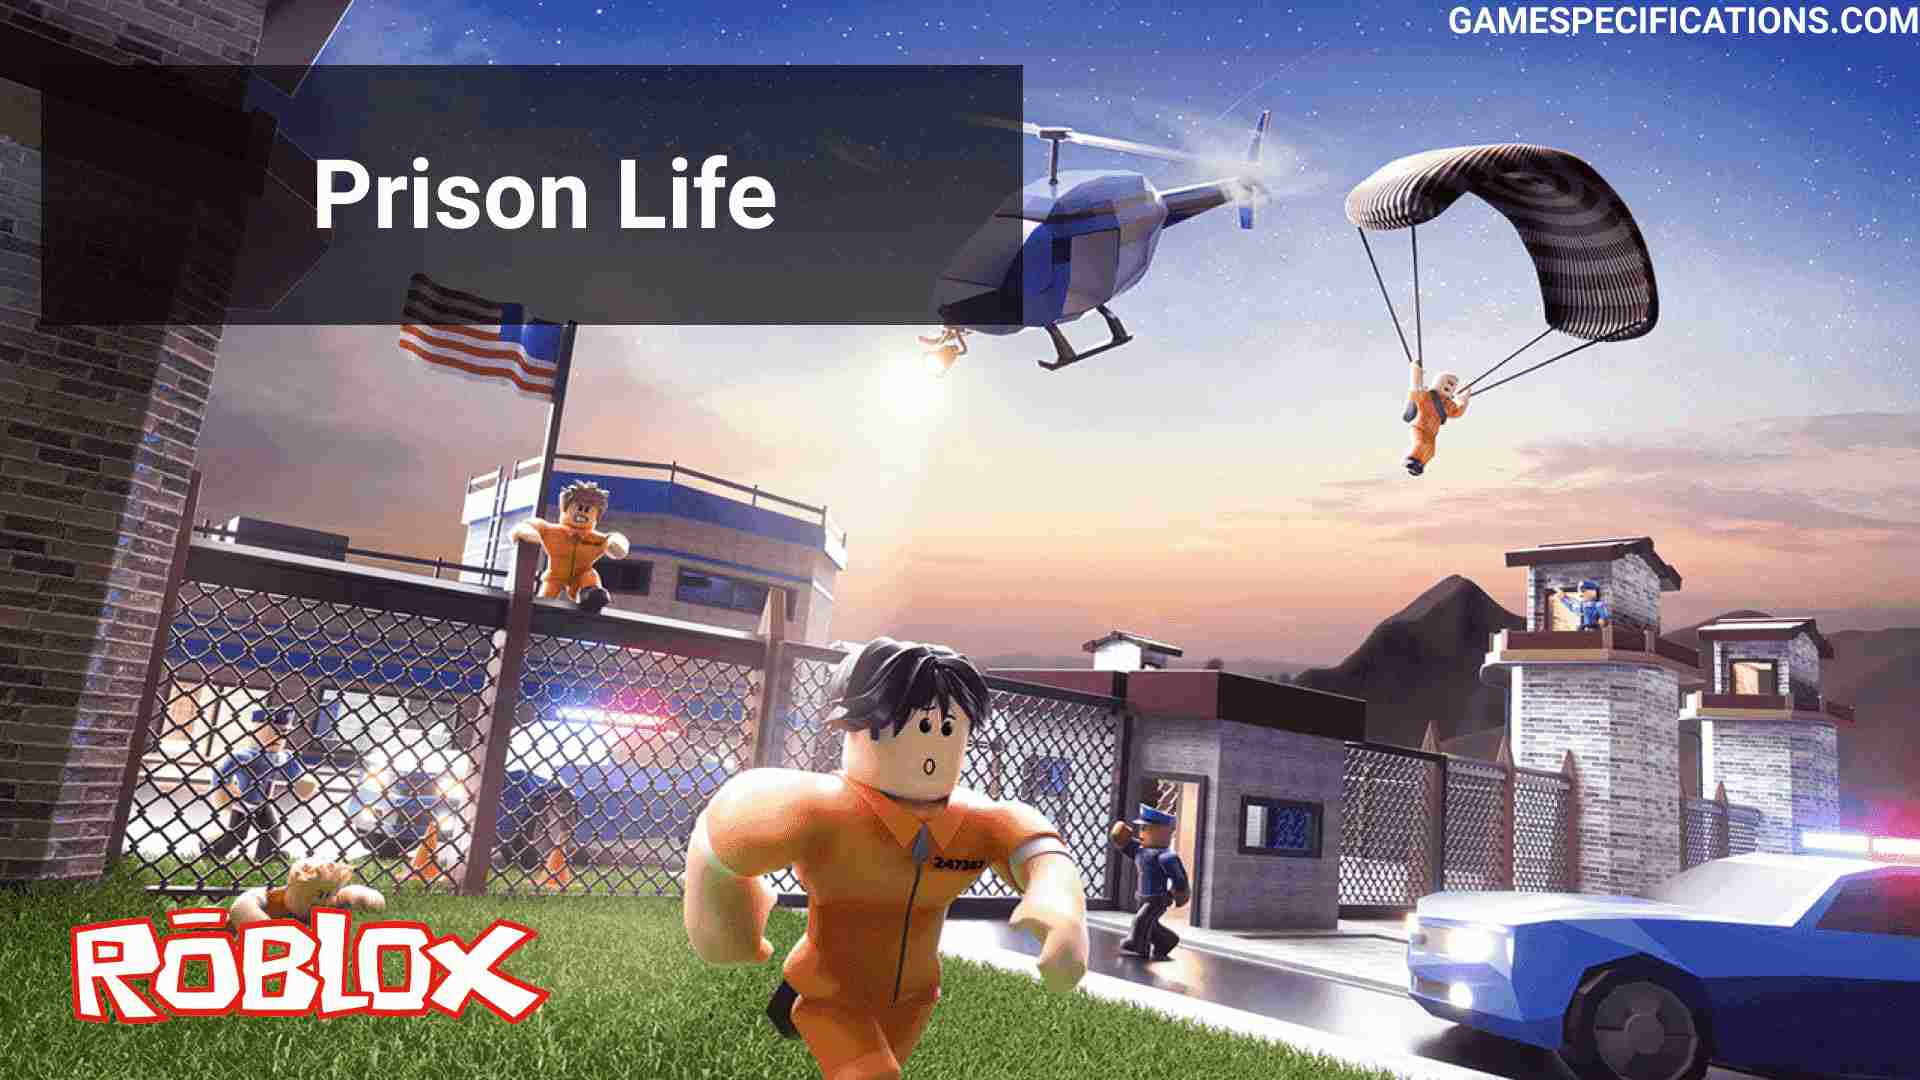 Roblox Prison Life A Complete Guide To Escape Prison 2021 Game Specifications - prison life roblox how to escape